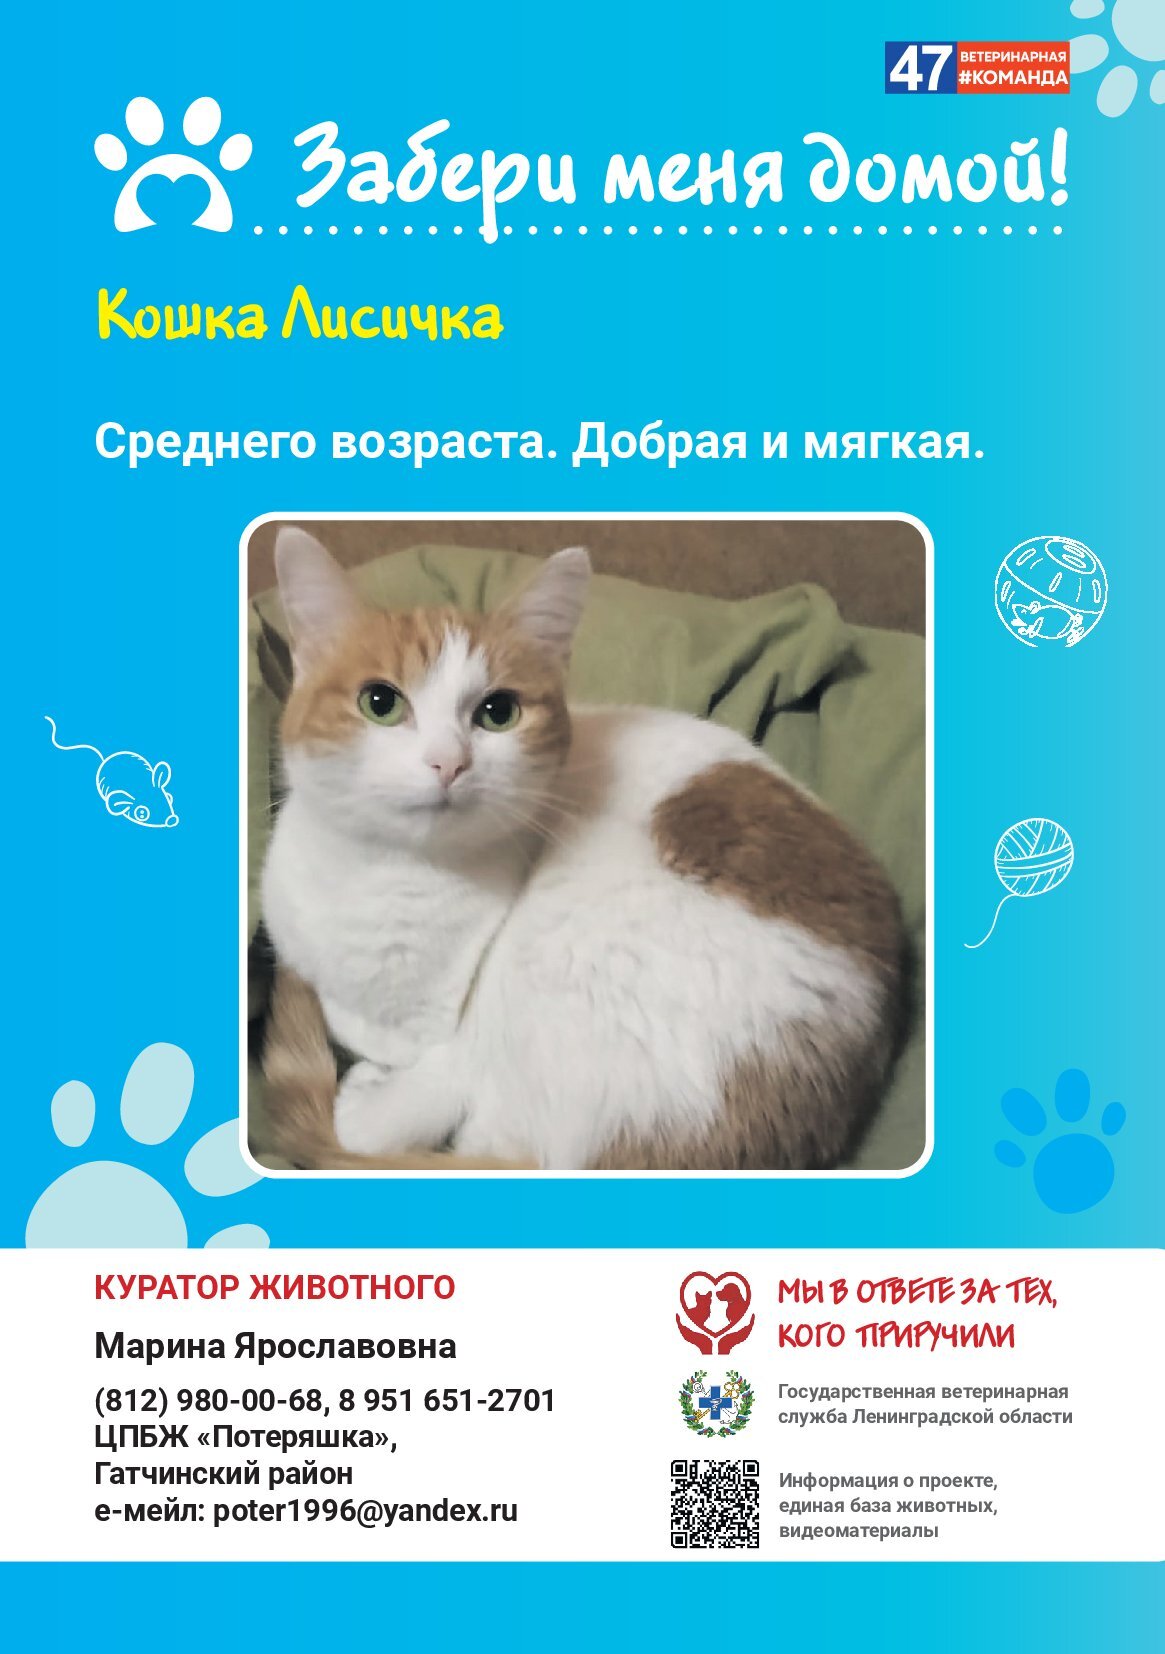 Архивы Кошки: полезная информация о домашних животных